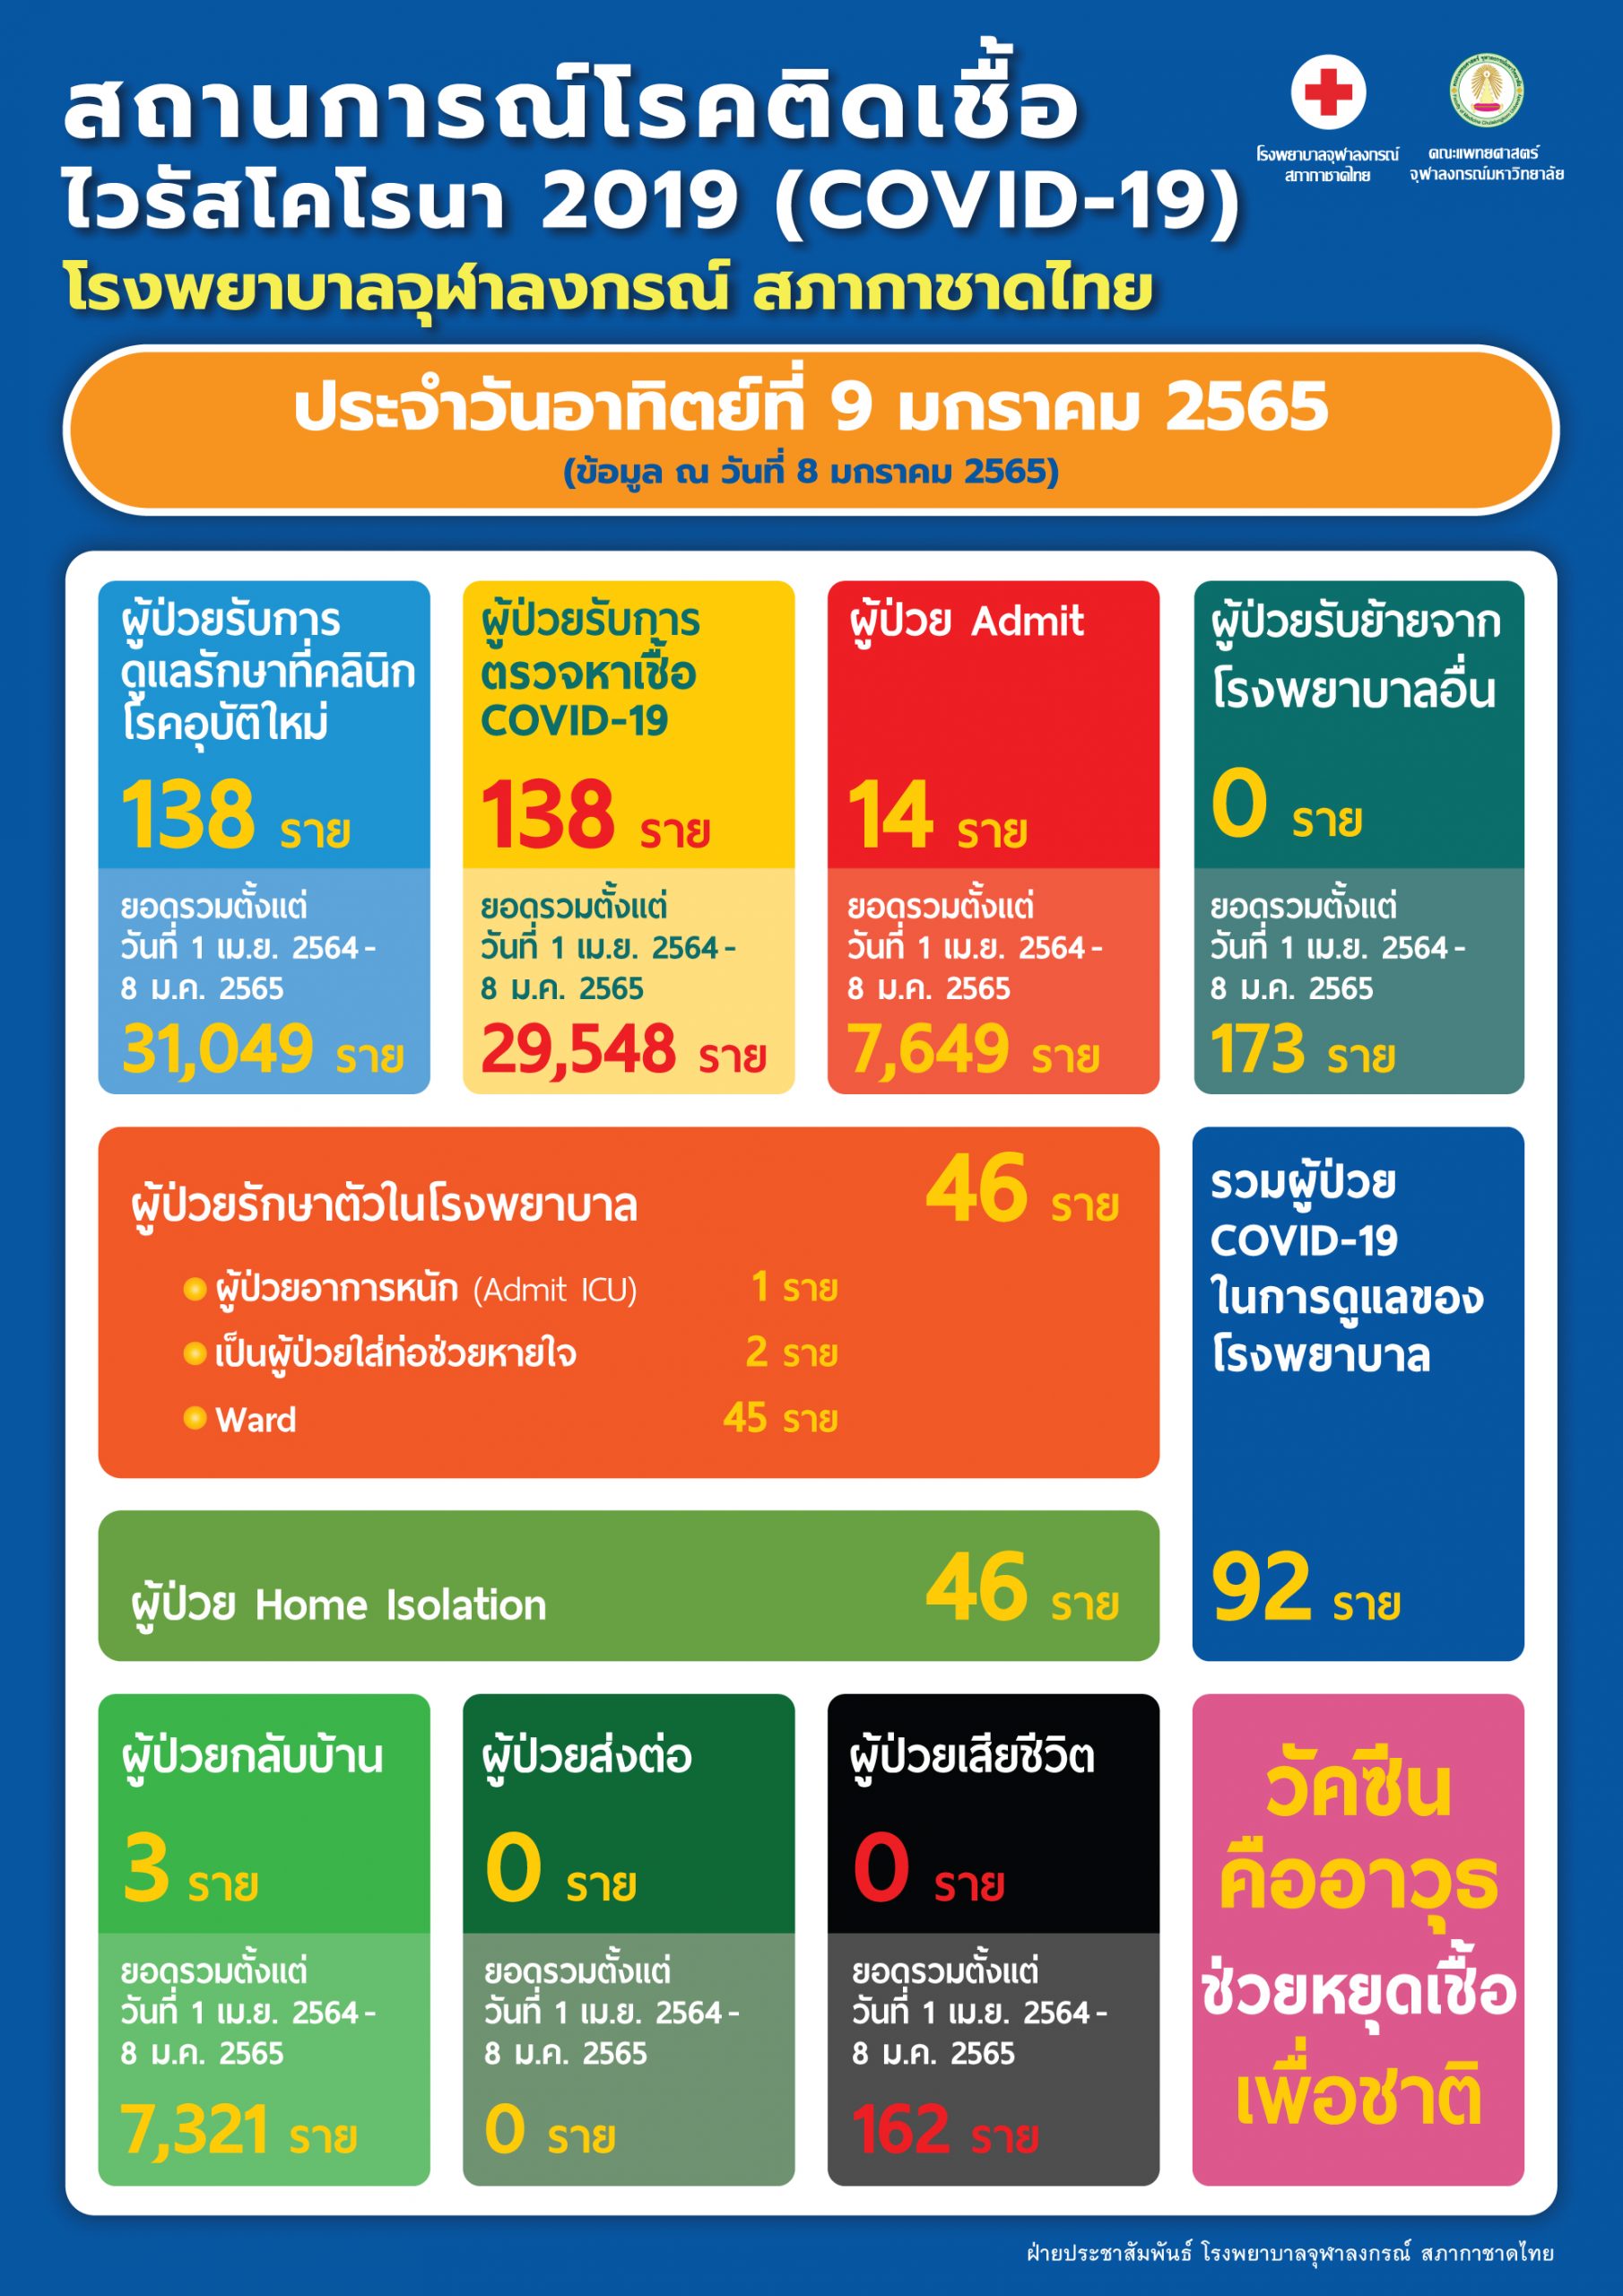 สถานการณ์โรคติดเชื้อไวรัสโคโรนา 2019 (COVID-19) โรงพยาบาลจุฬาลงกรณ์ สภากาชาดไทย ประจำวันอาทิตย์ที่ 9 มกราคม 2565